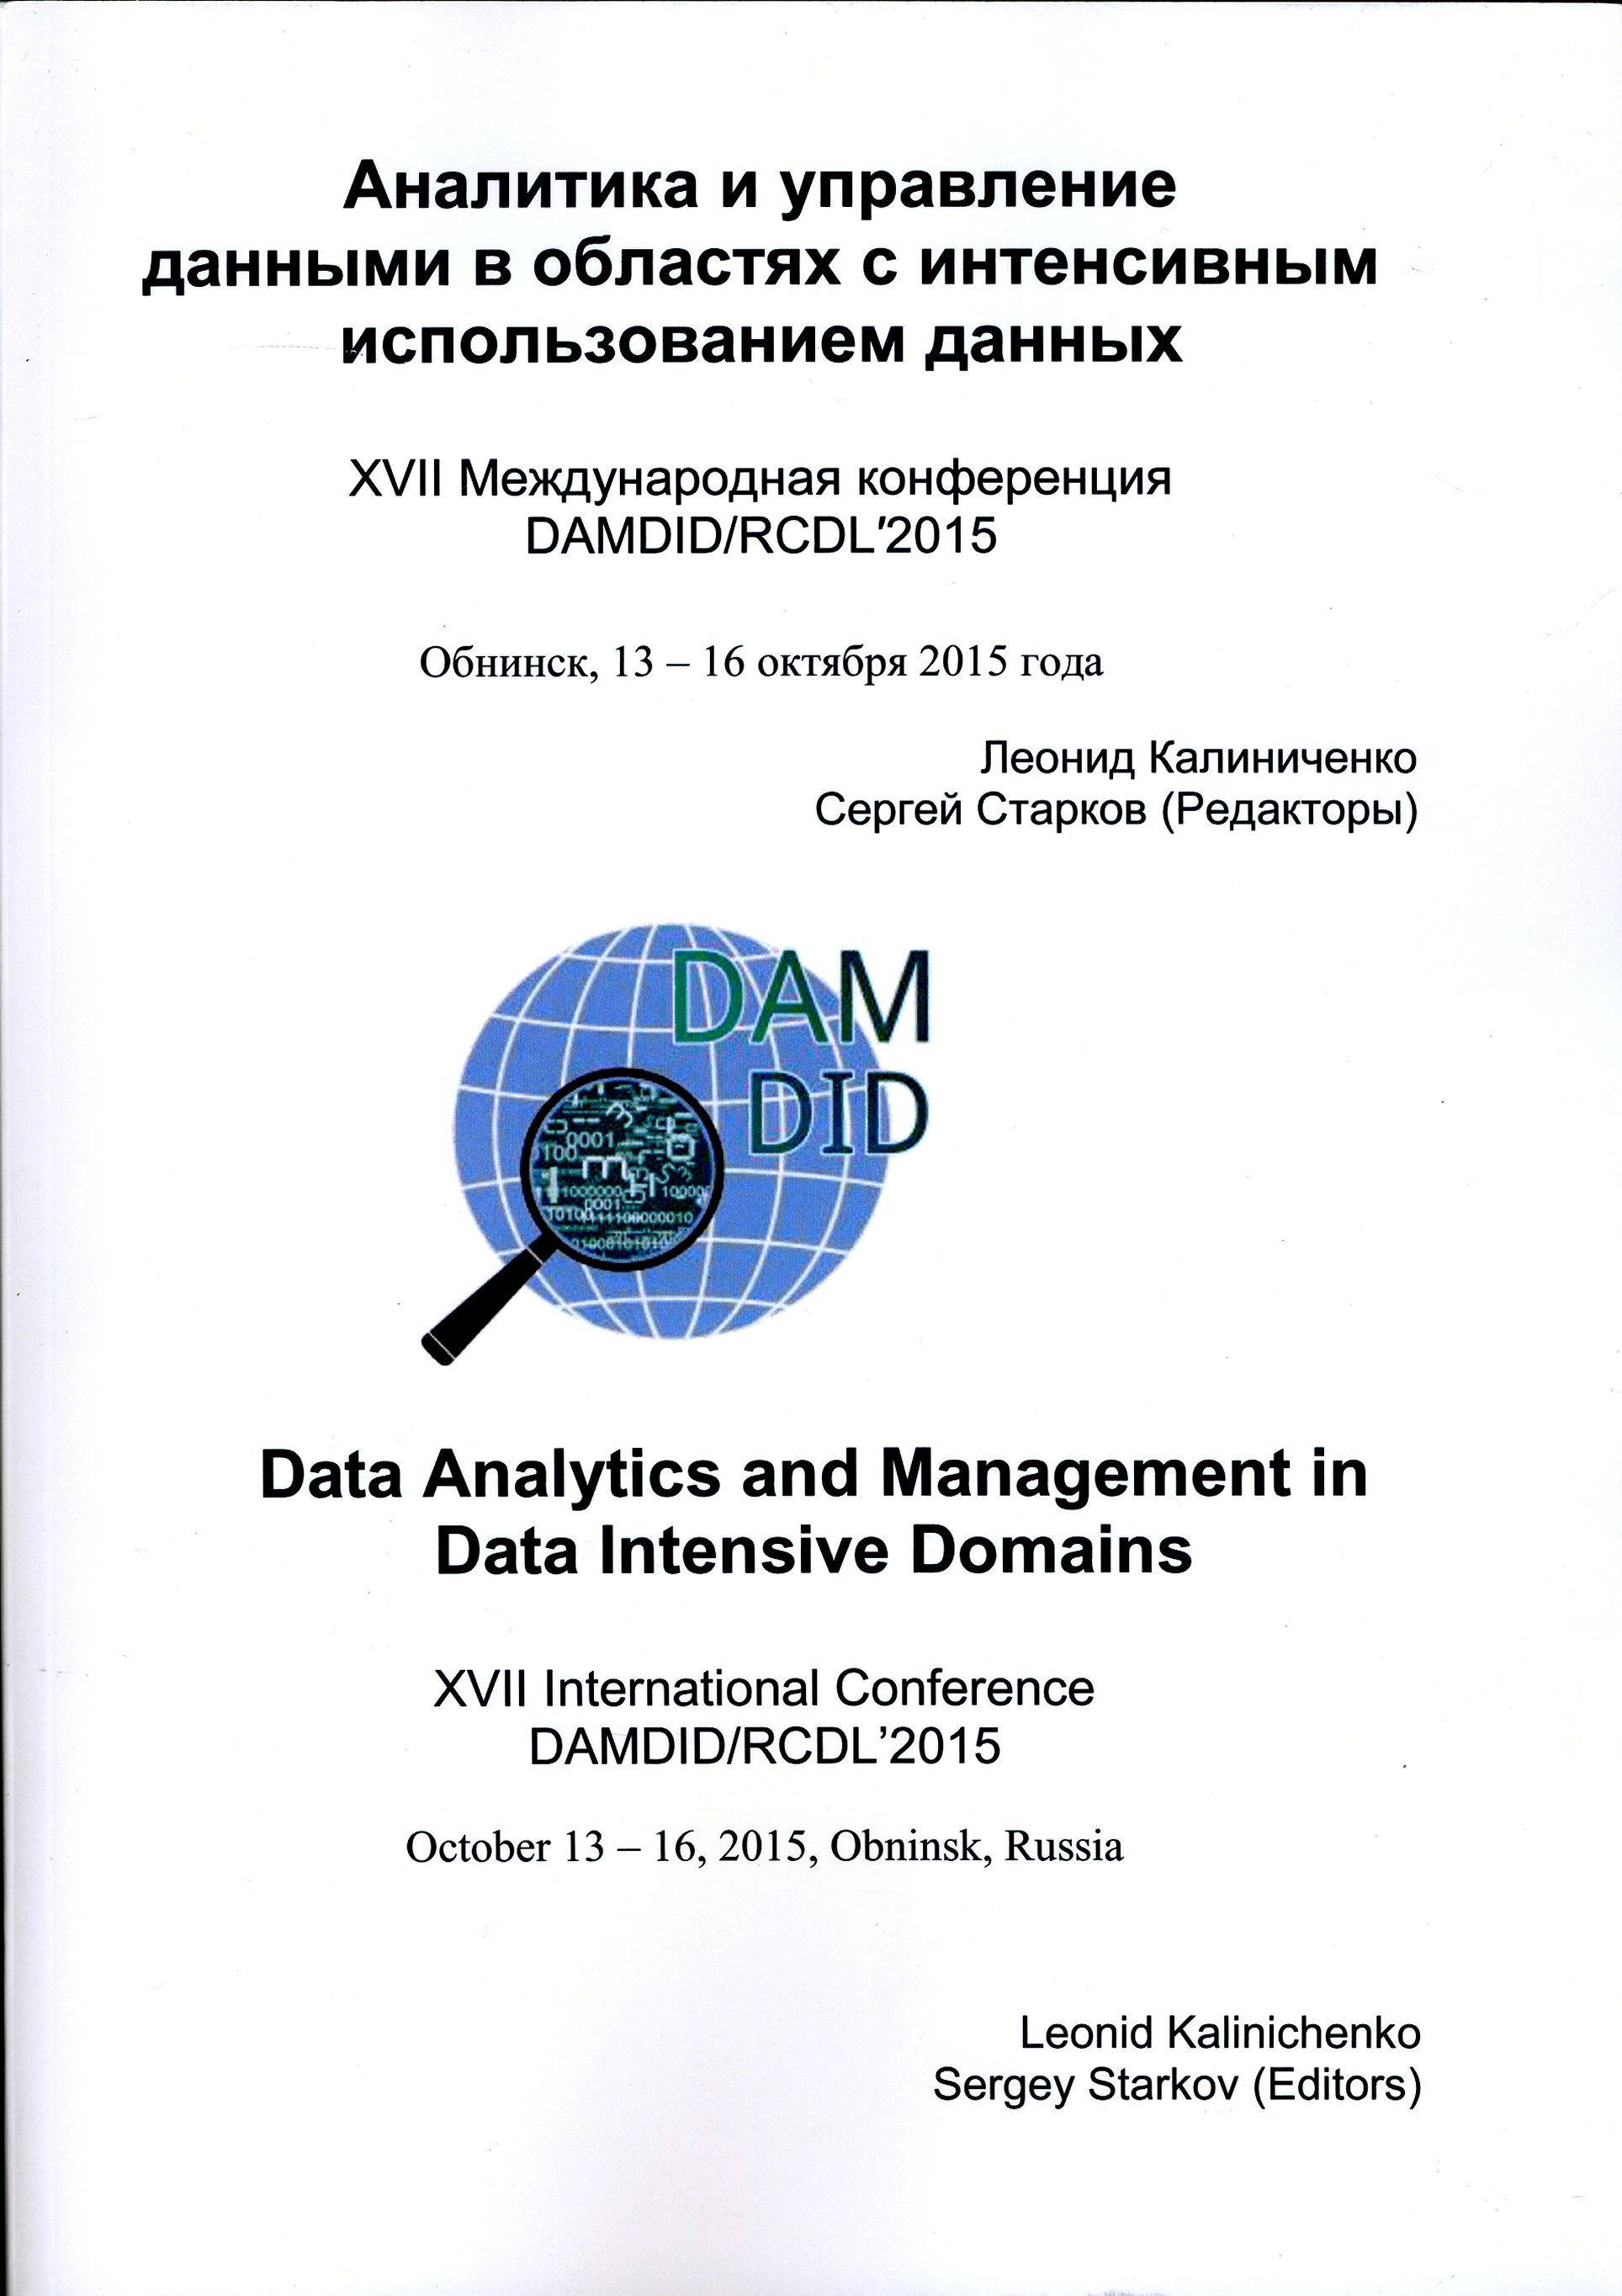 Труды ХVII международной конференции «Аналитика и управление данными в областях с интенсивным использованием данных» (“Data Analytics and Management in Data Intensive Domains” (DAMDID))